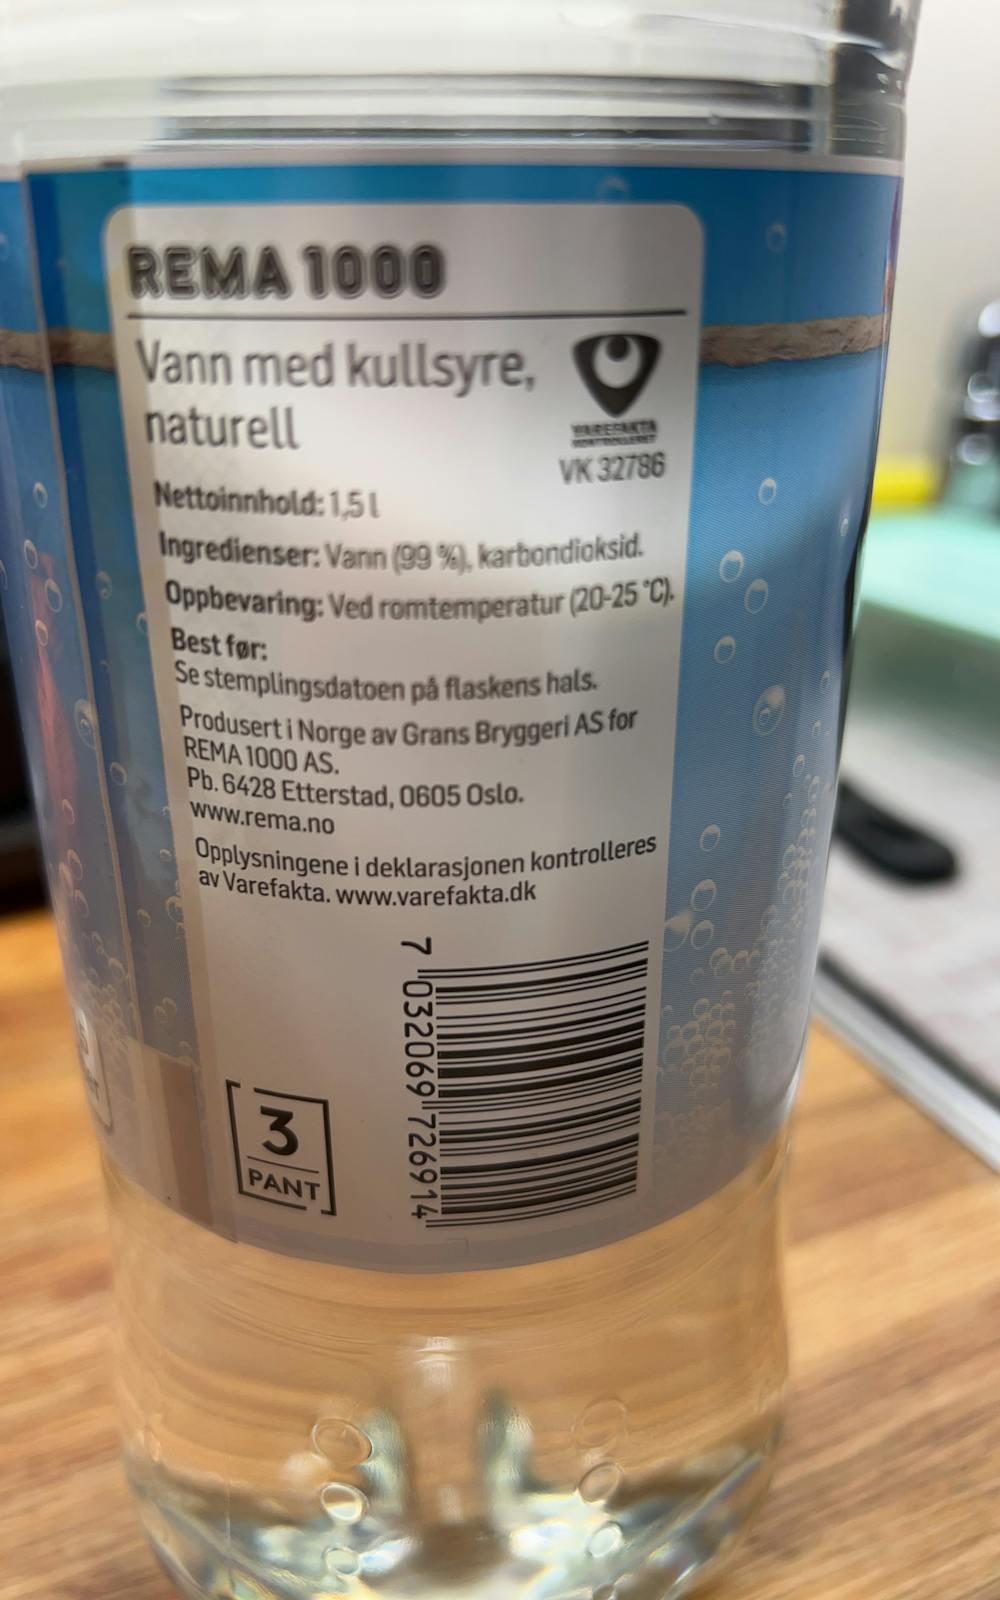 Ingredienslisten til Vann med kullsyre naturell, Rema 1000